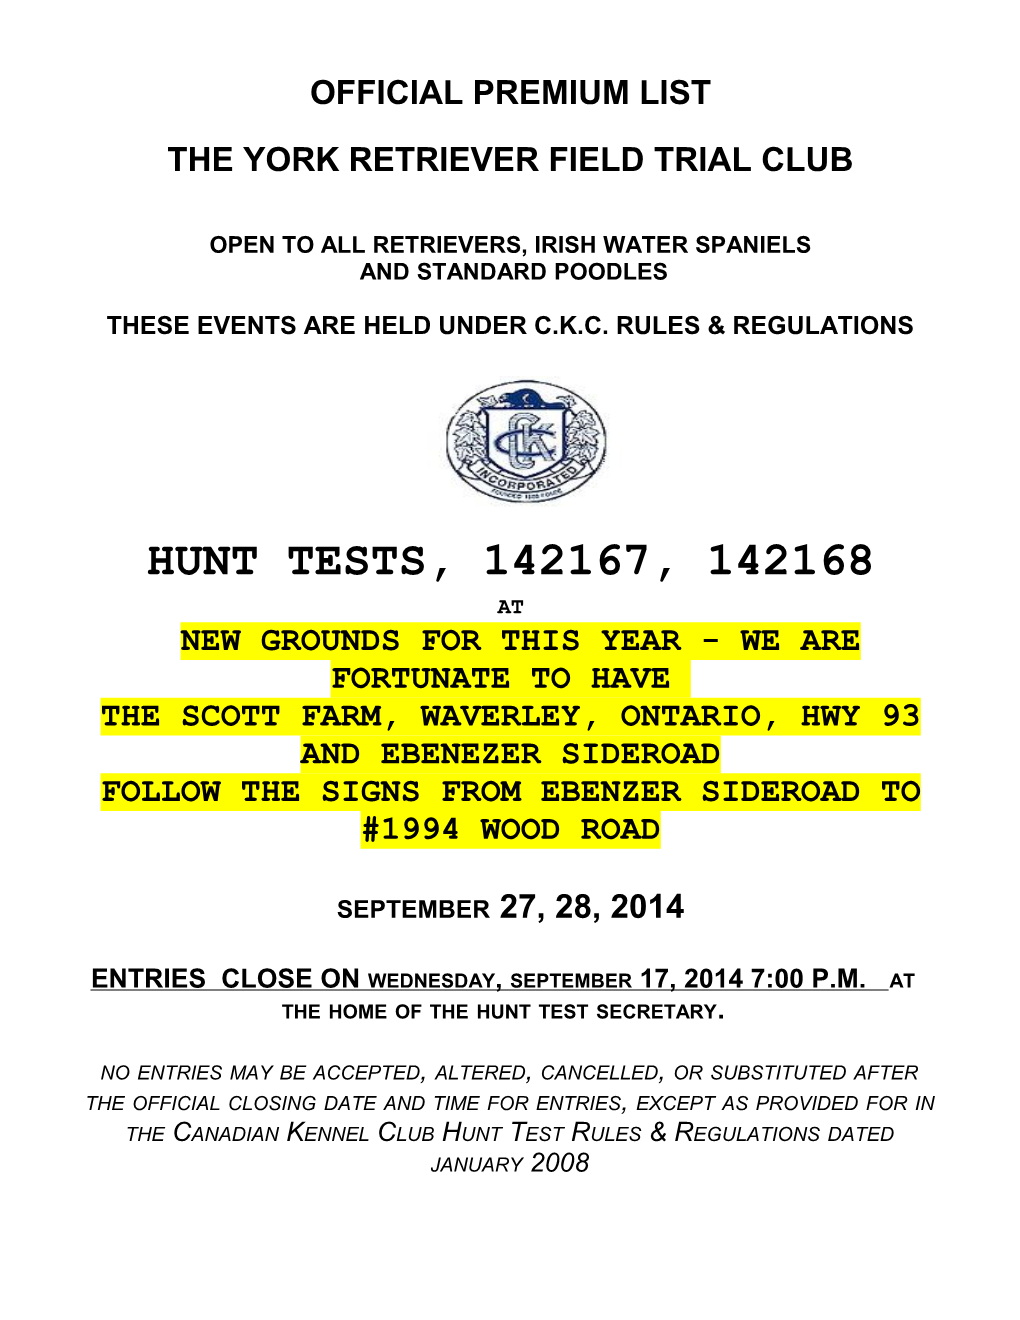 The York Retriever Field Trial Club